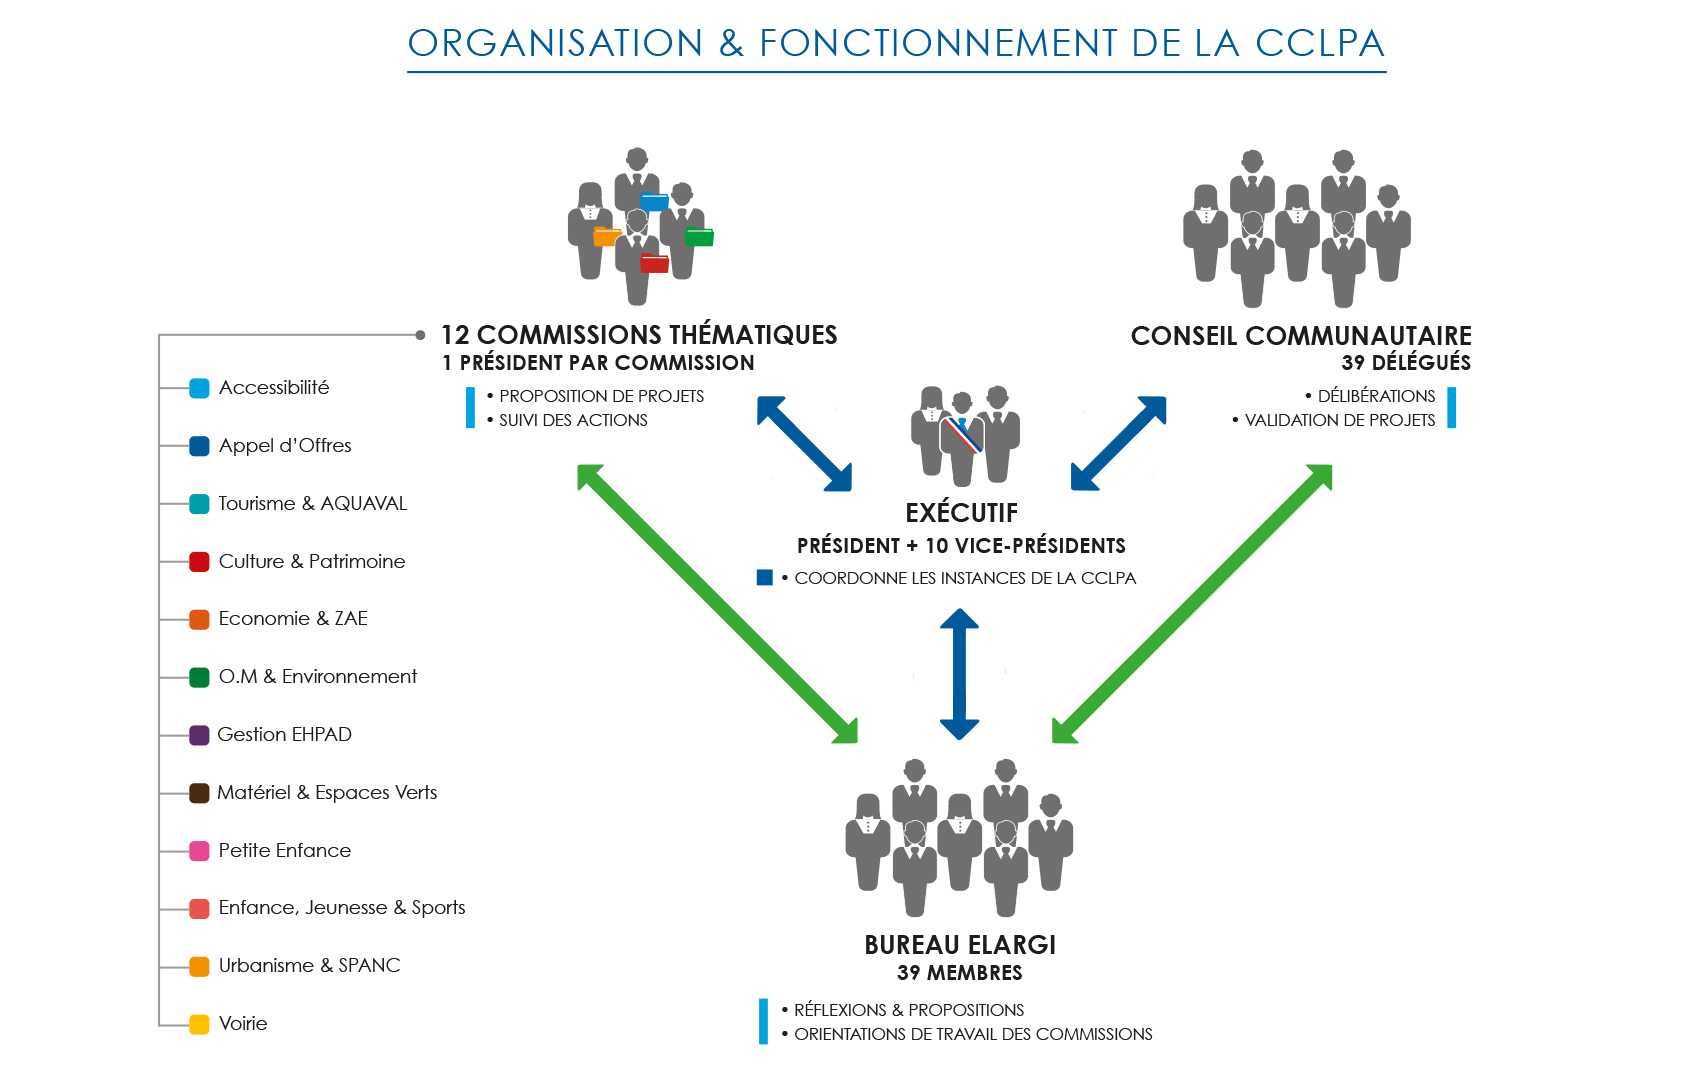 Organisation & Fonctionnement de la CCLPA